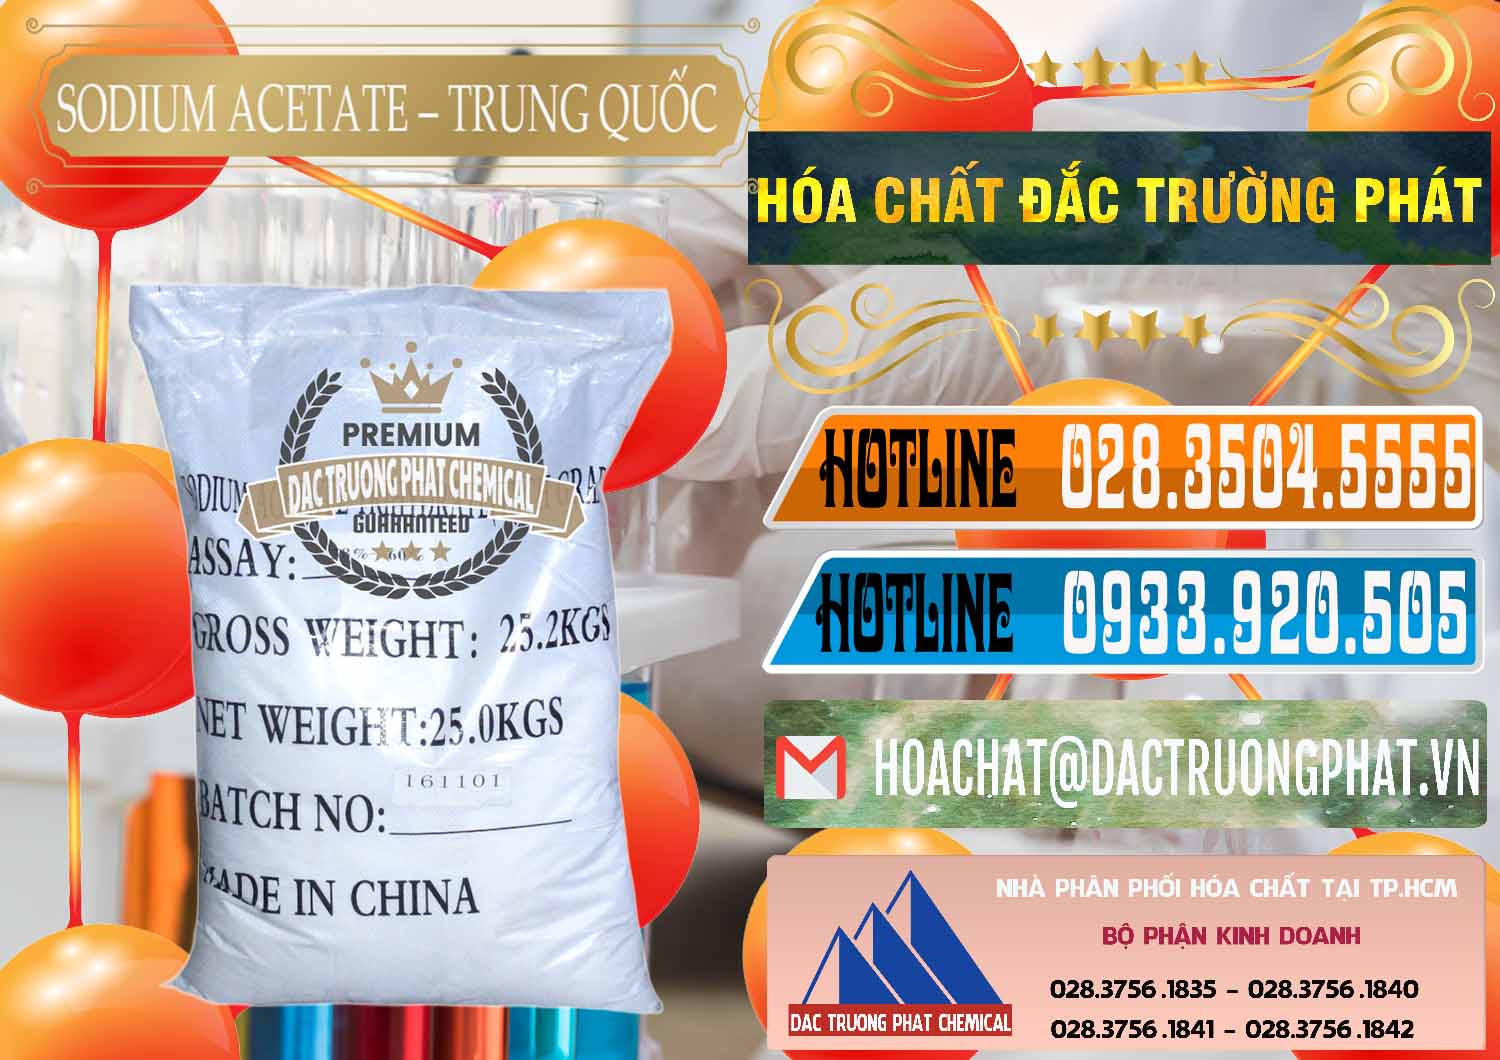 Công ty chuyên kinh doanh & bán Sodium Acetate - Natri Acetate Trung Quốc China - 0134 - Cty phân phối và bán hóa chất tại TP.HCM - stmp.net